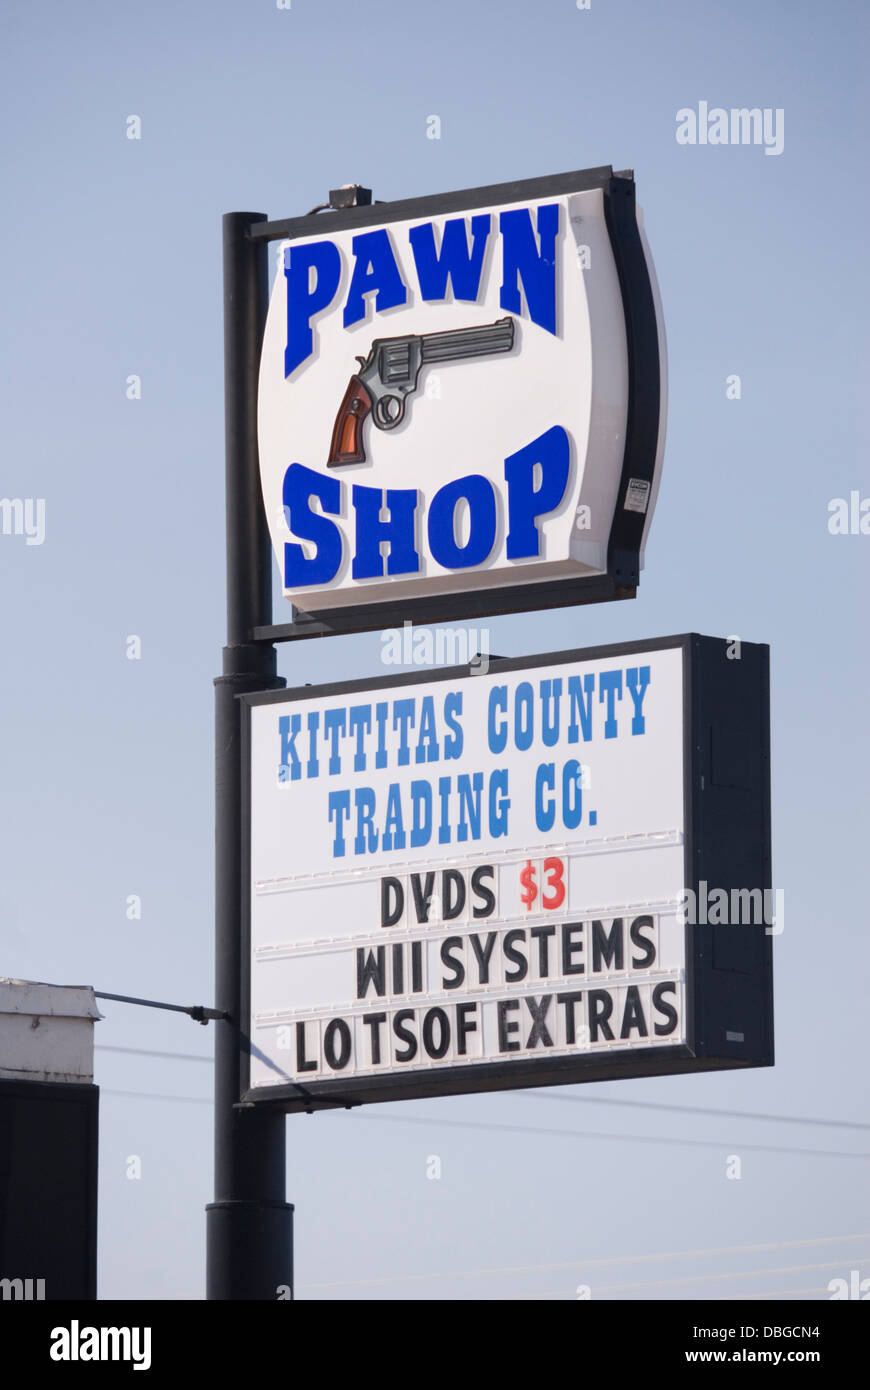 Peón Tienda cartel con imagen de una pistola, publicidad barata sistemas Wii & DVD, Ellensburg Trading Co, Ellensburg, Washington, EE.UU. Foto de stock